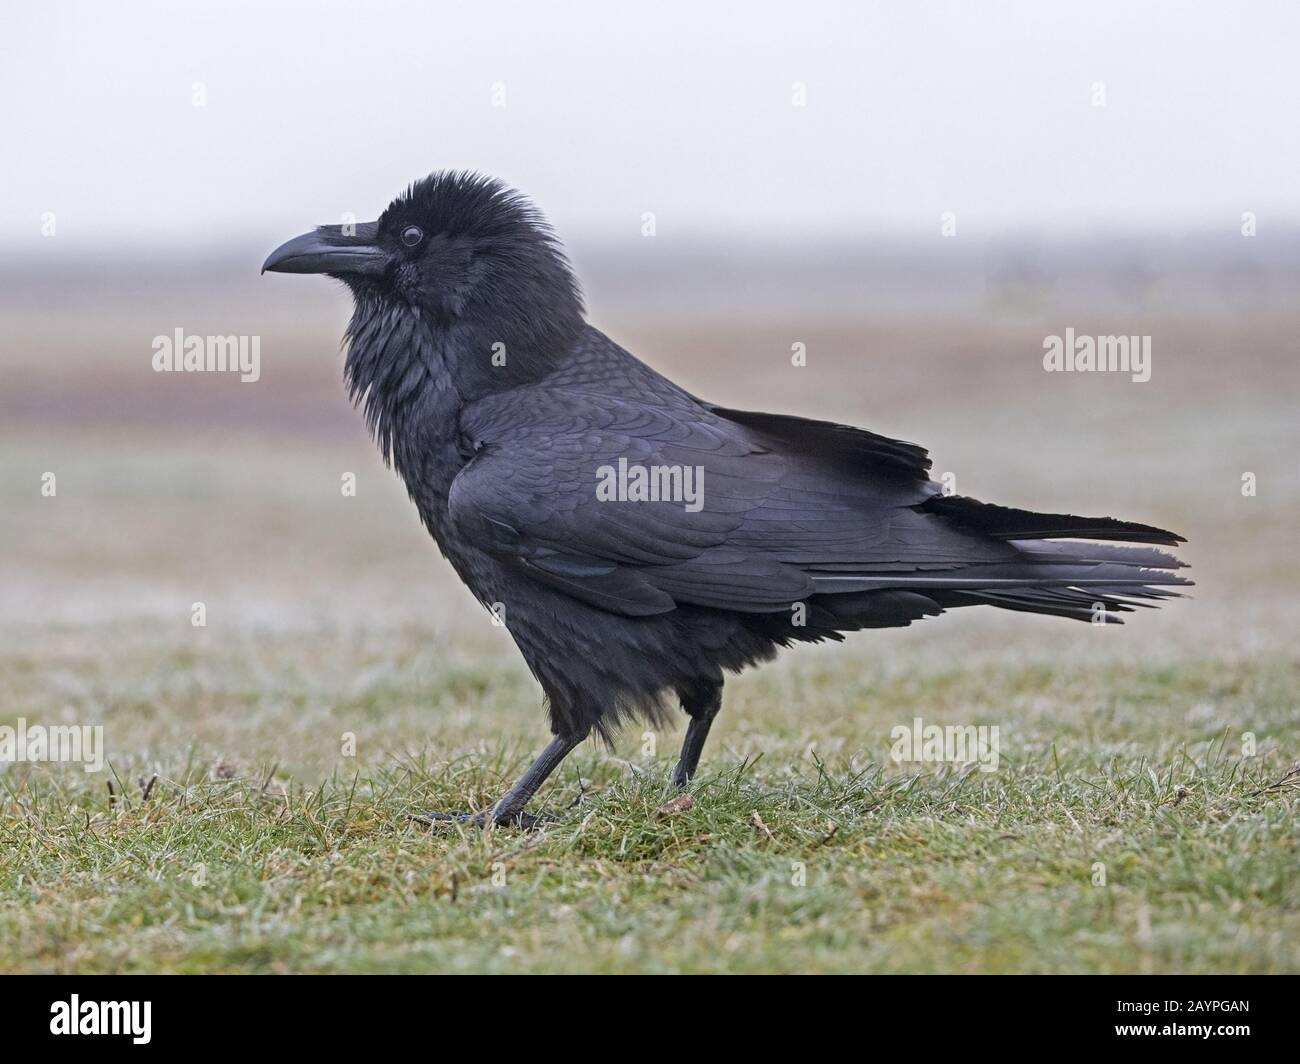 Common raven standing Stock Photo